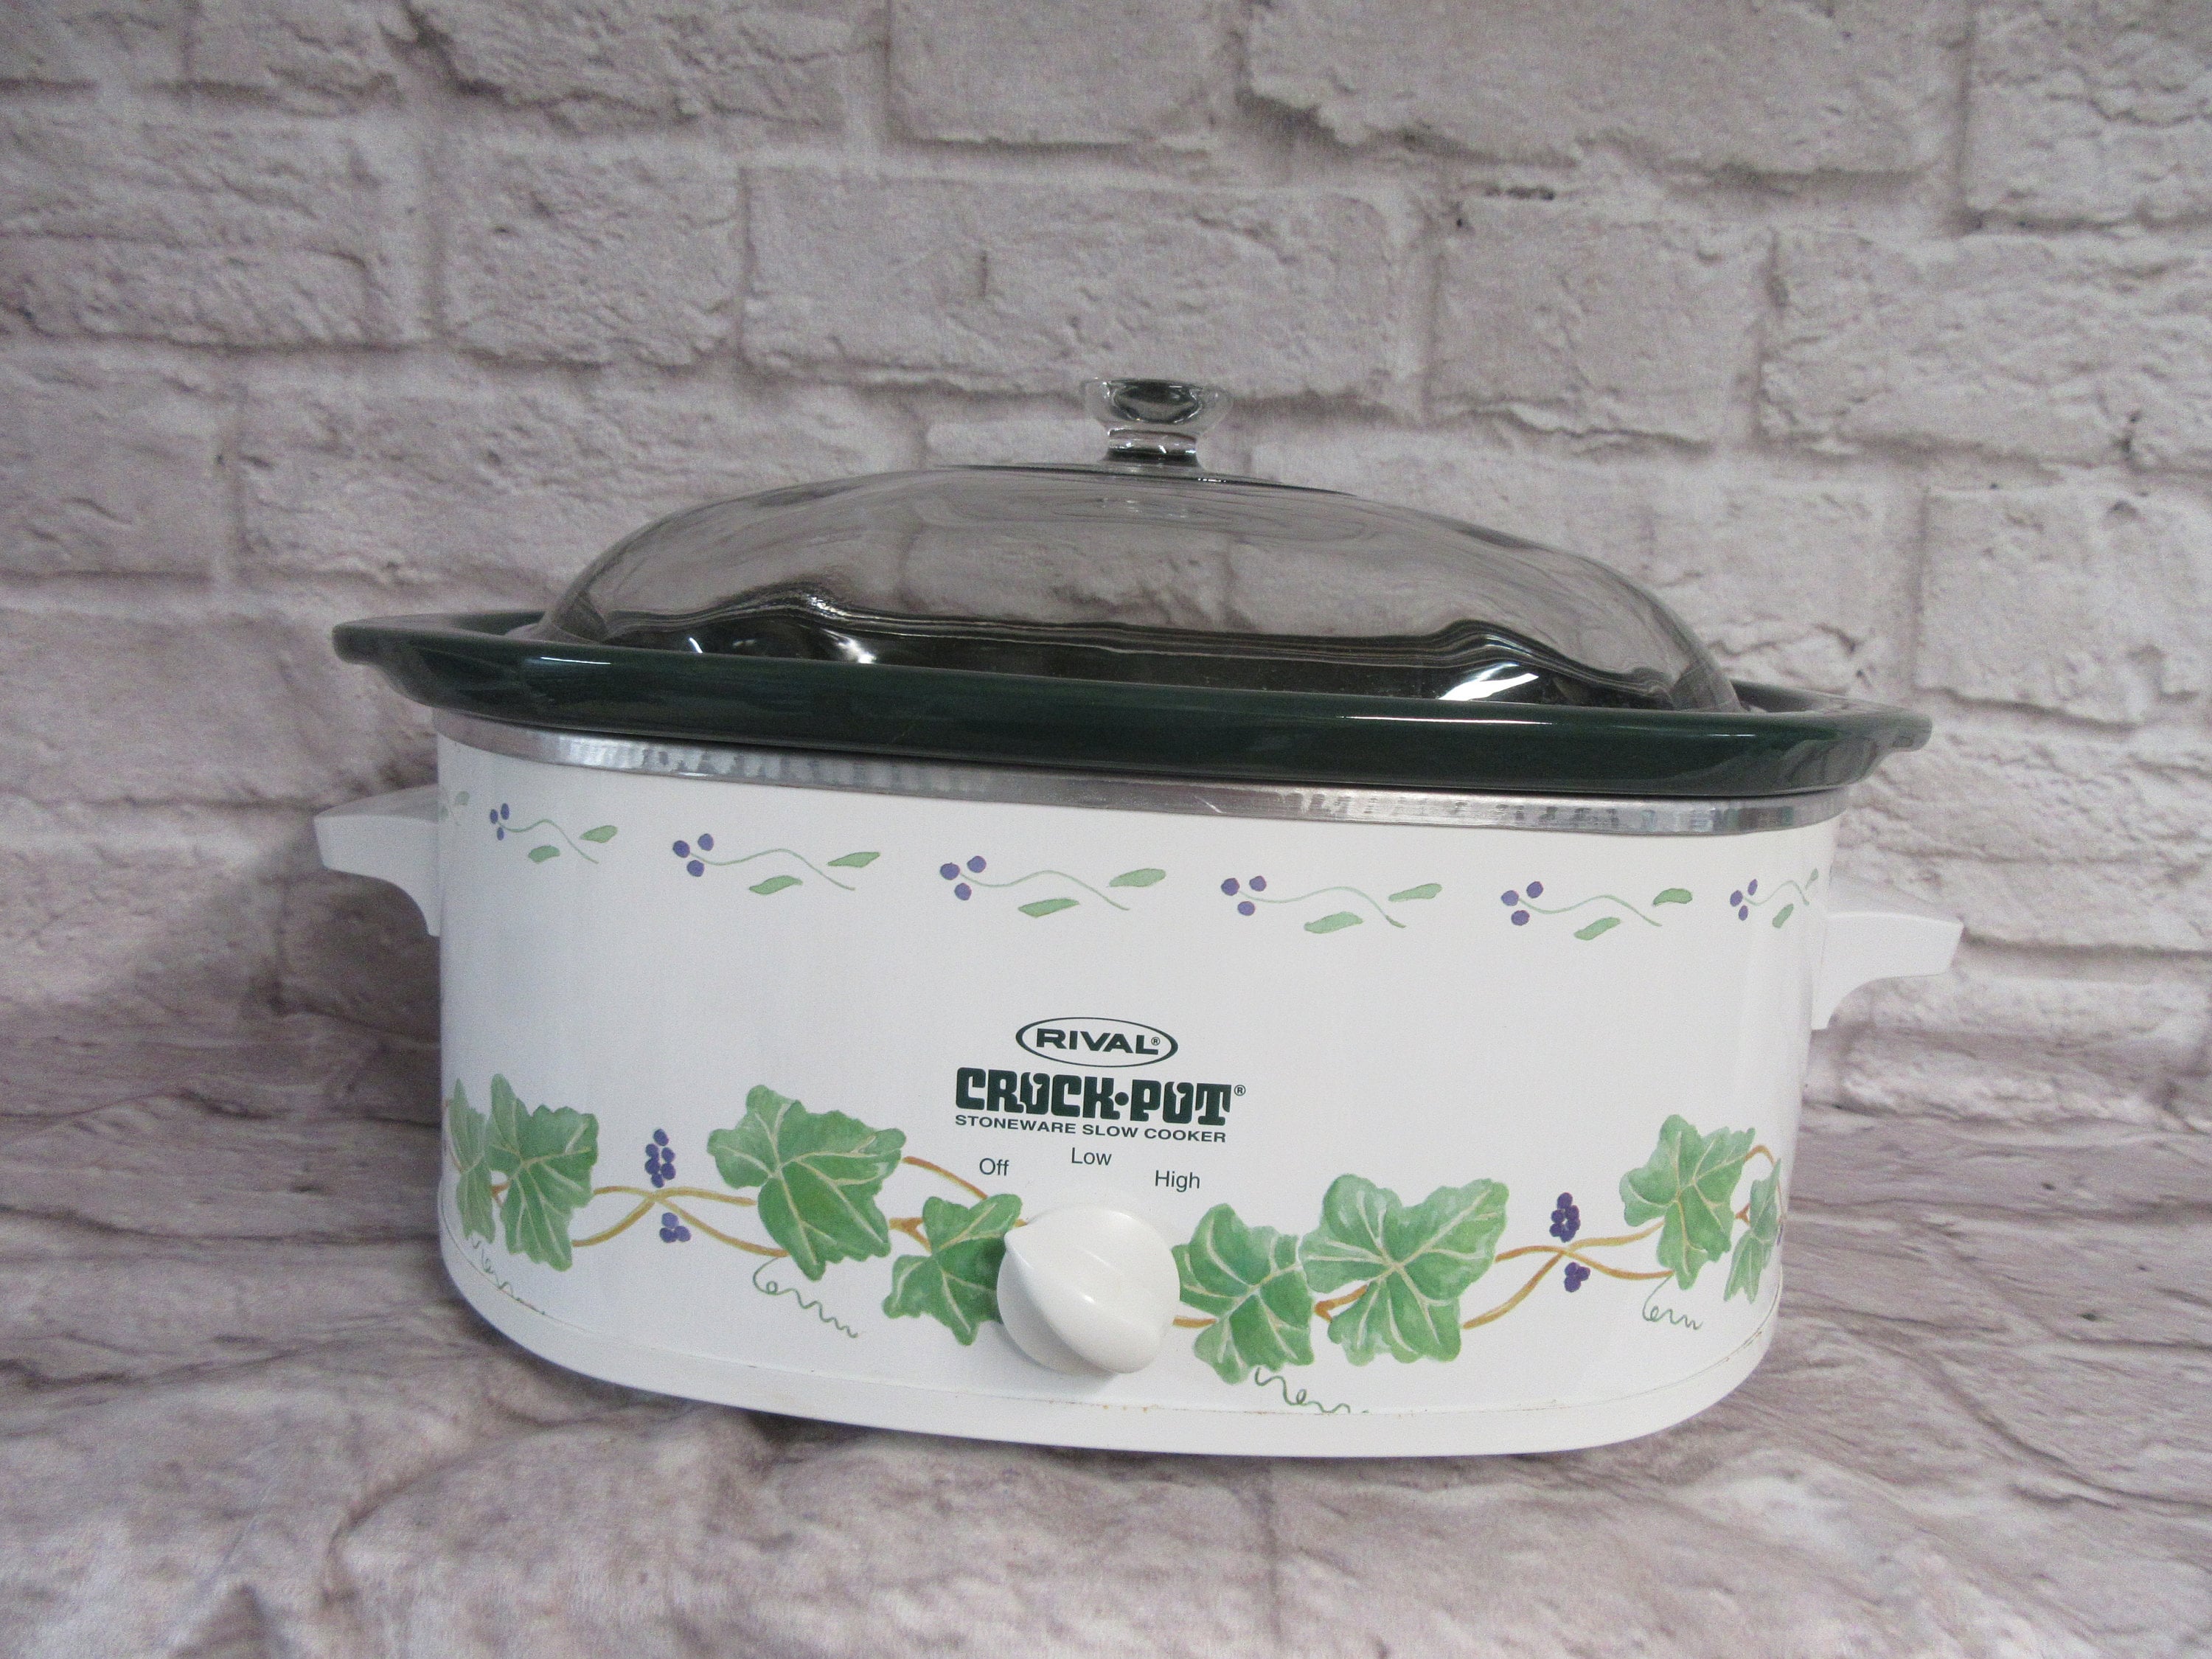 Vintage Rival Crock-ette 1 Quart Mini Crock Pot Slow Cooker Model 3200  Tested for sale online